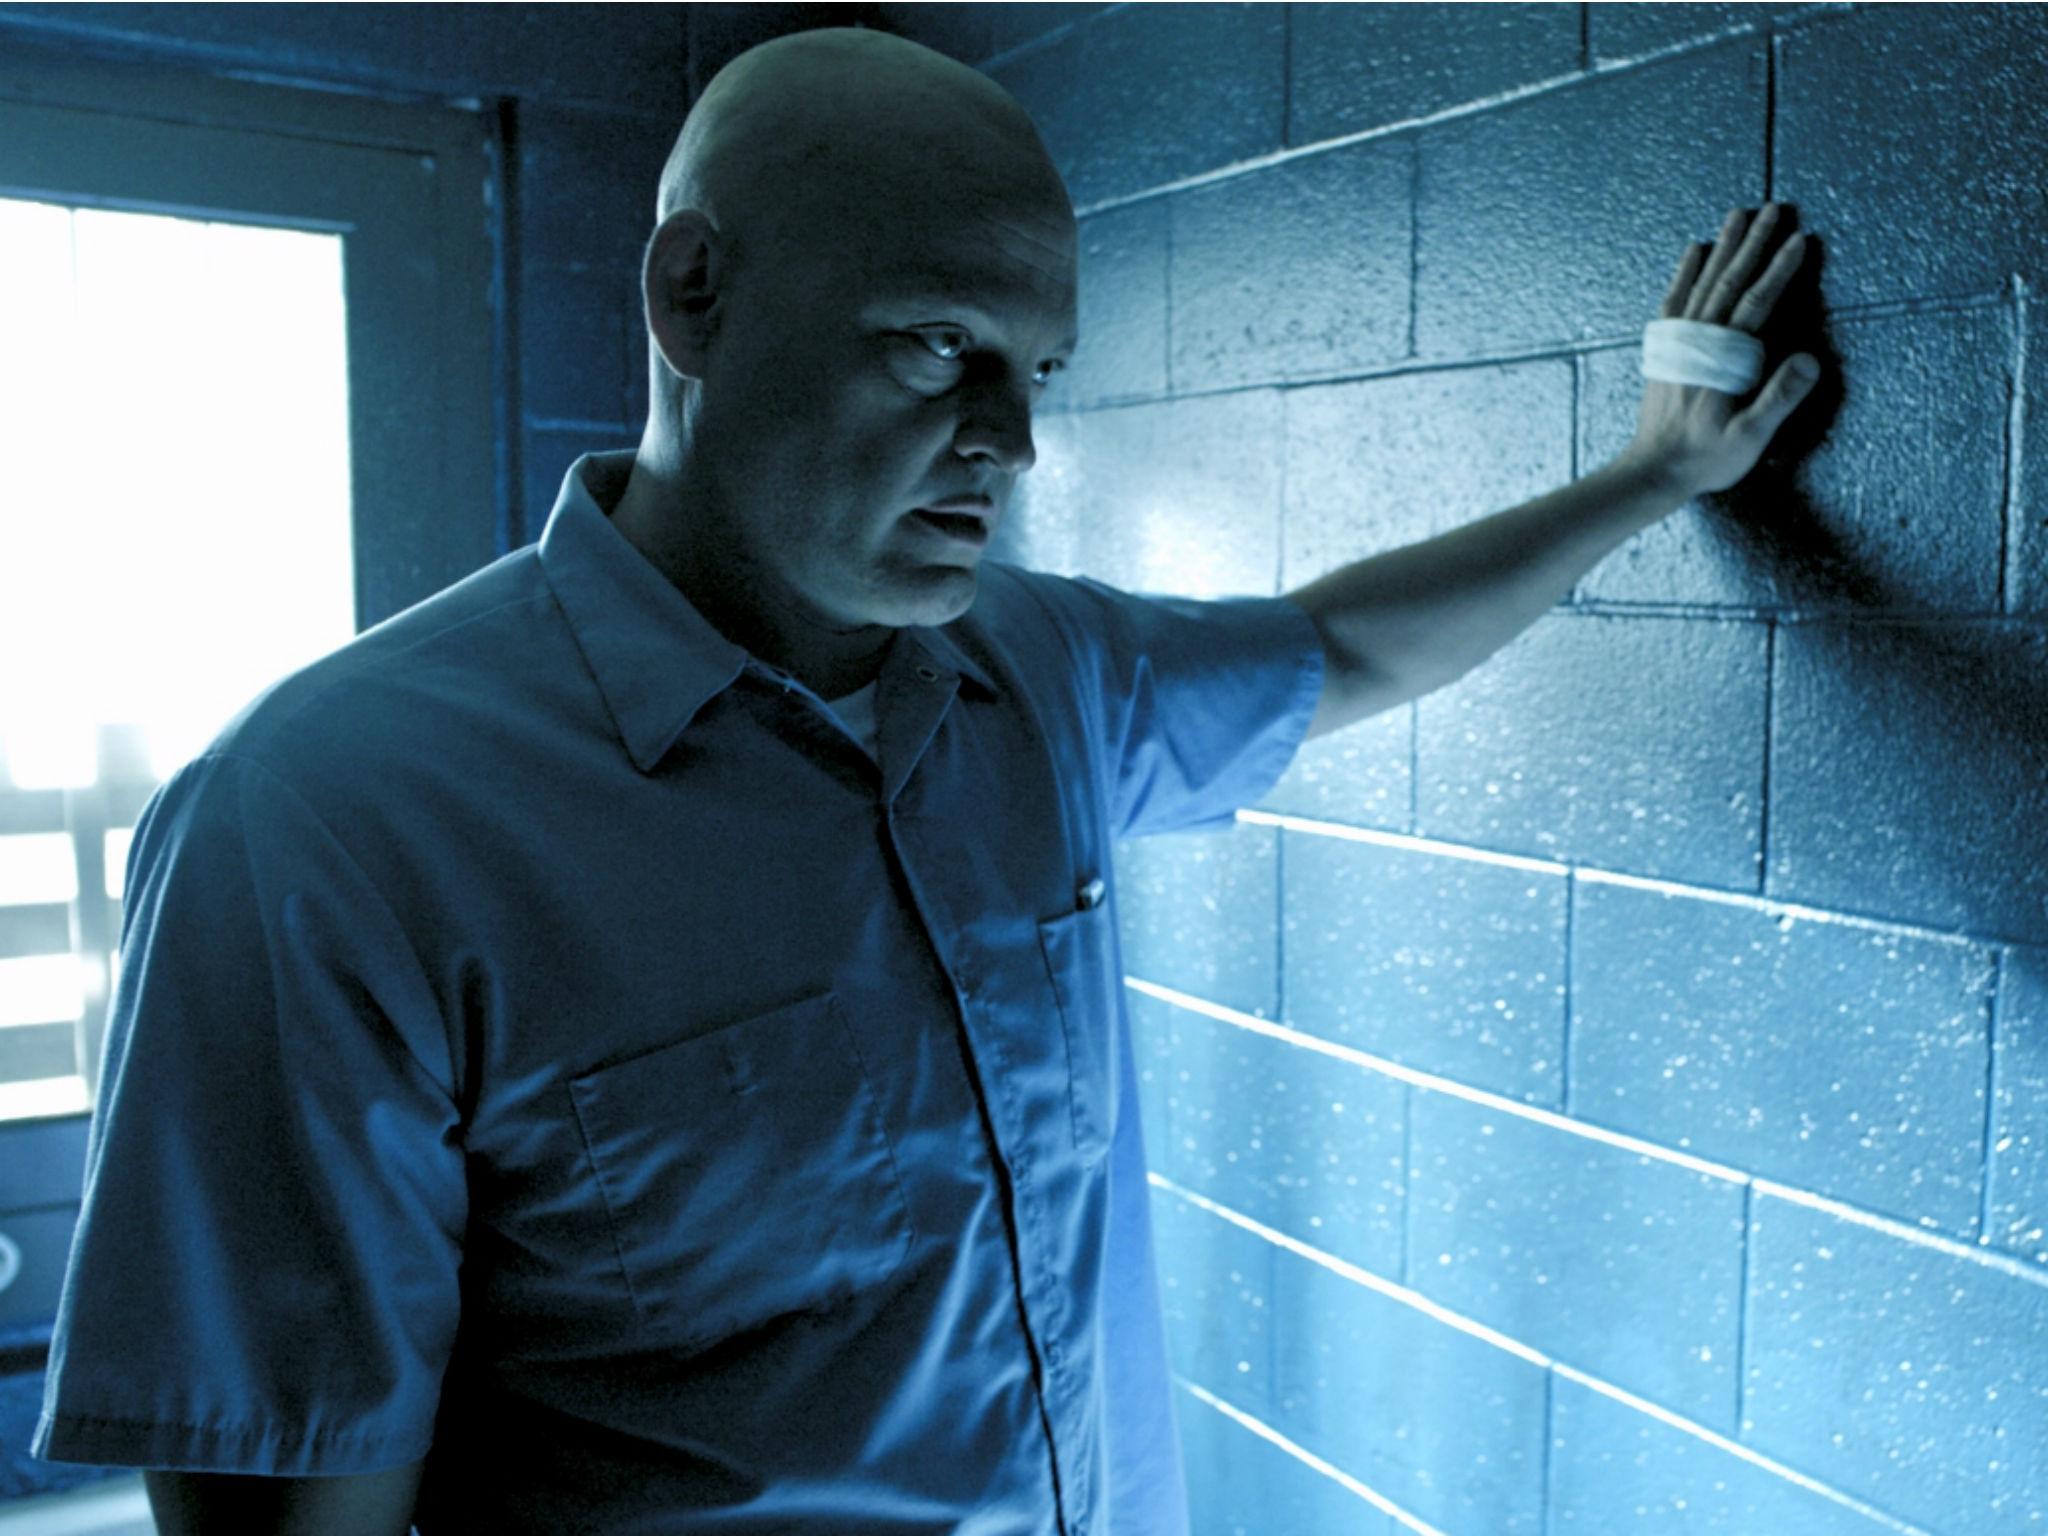 Vince Vaughn as drug dealer Bradley Thomas in 'Brawl In Cell Block 99'